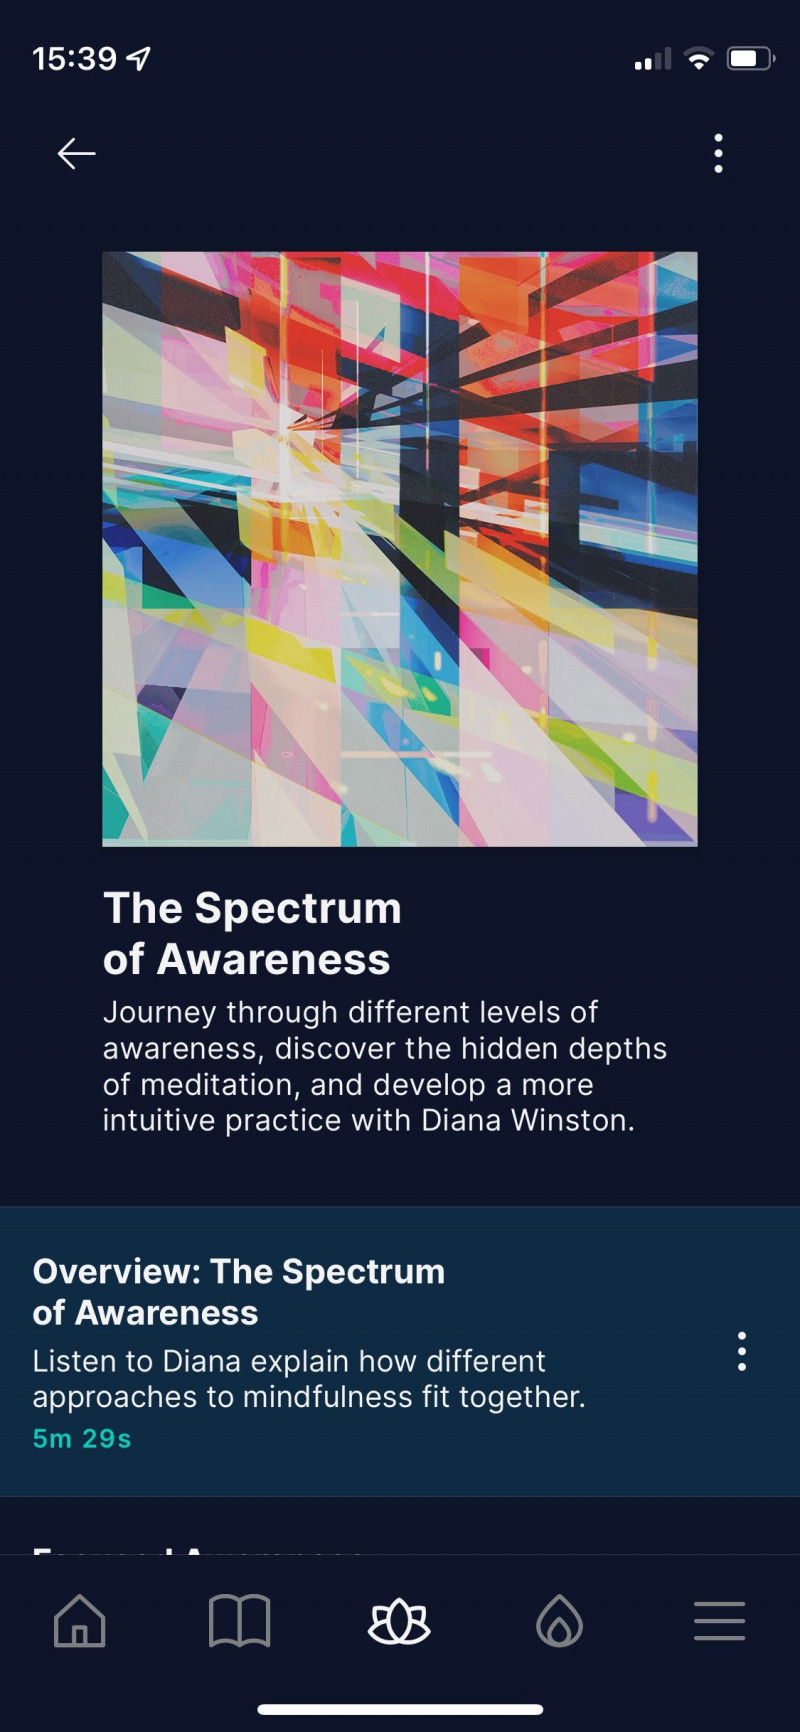   Captura de pantalla de la aplicación Waking Up que muestra el curso Spectrum of Awareness